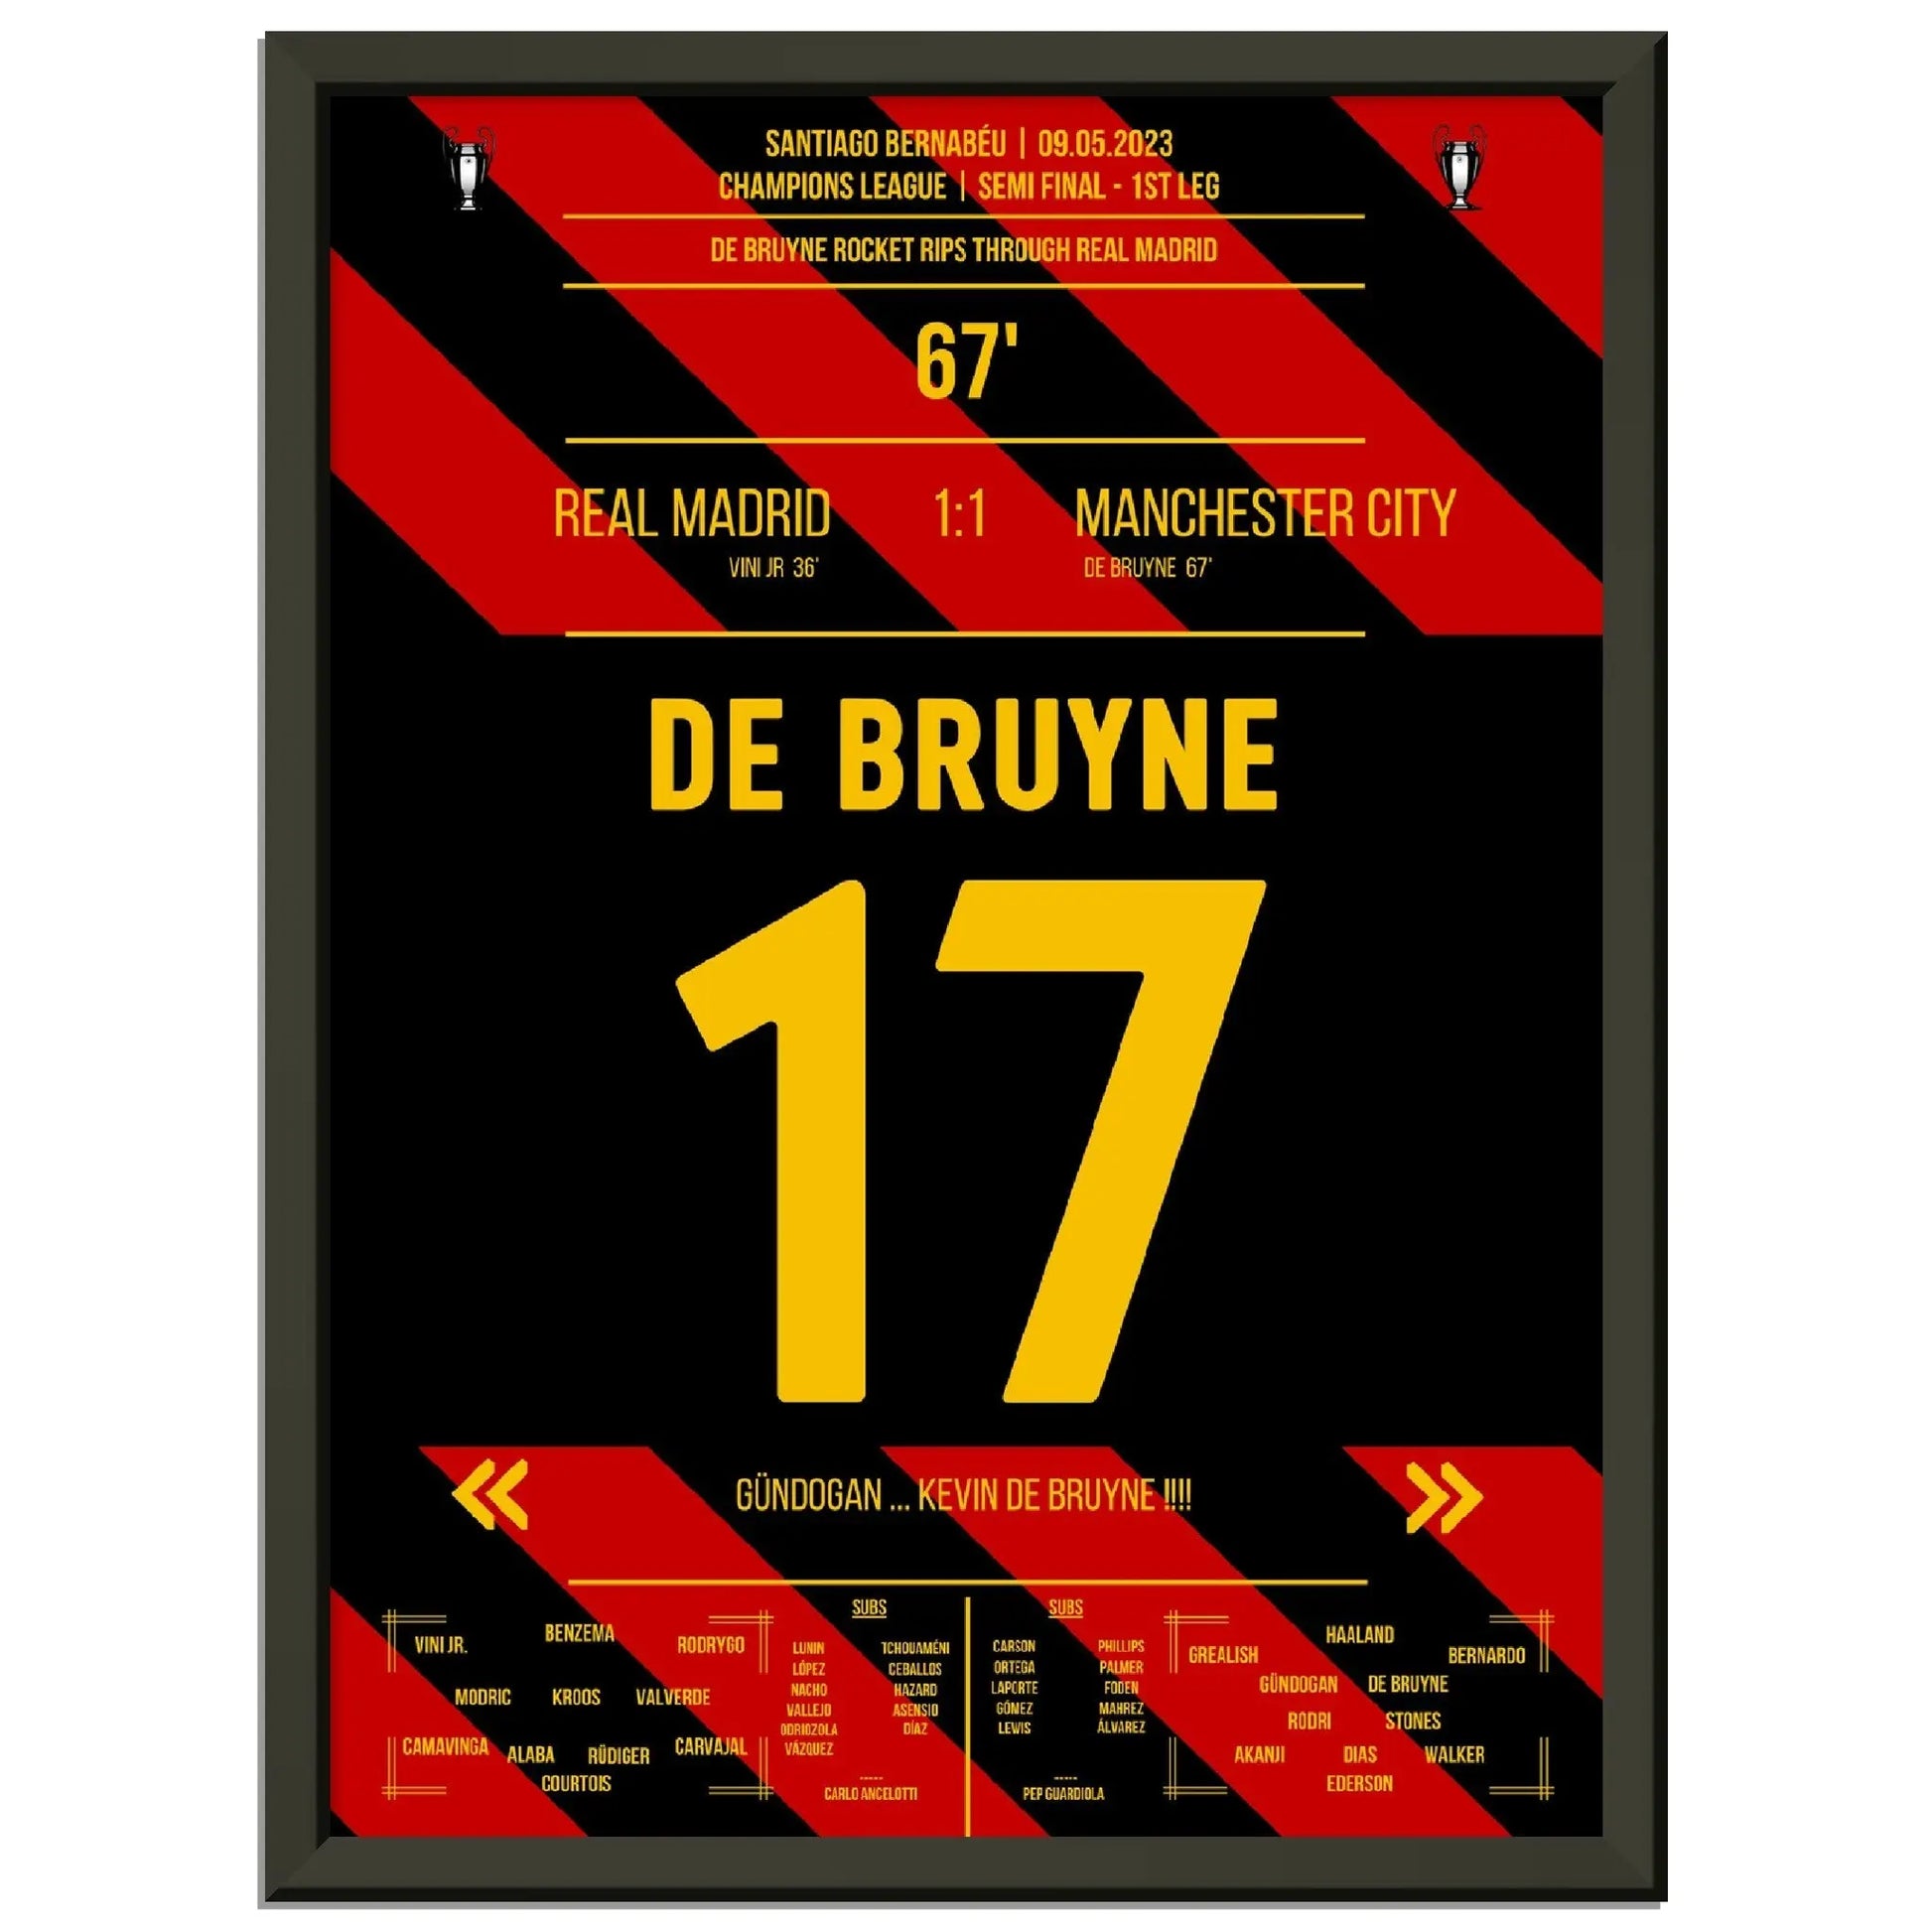 De Bruyne packt den Hammer aus - City holt Remis bei Real 2023 